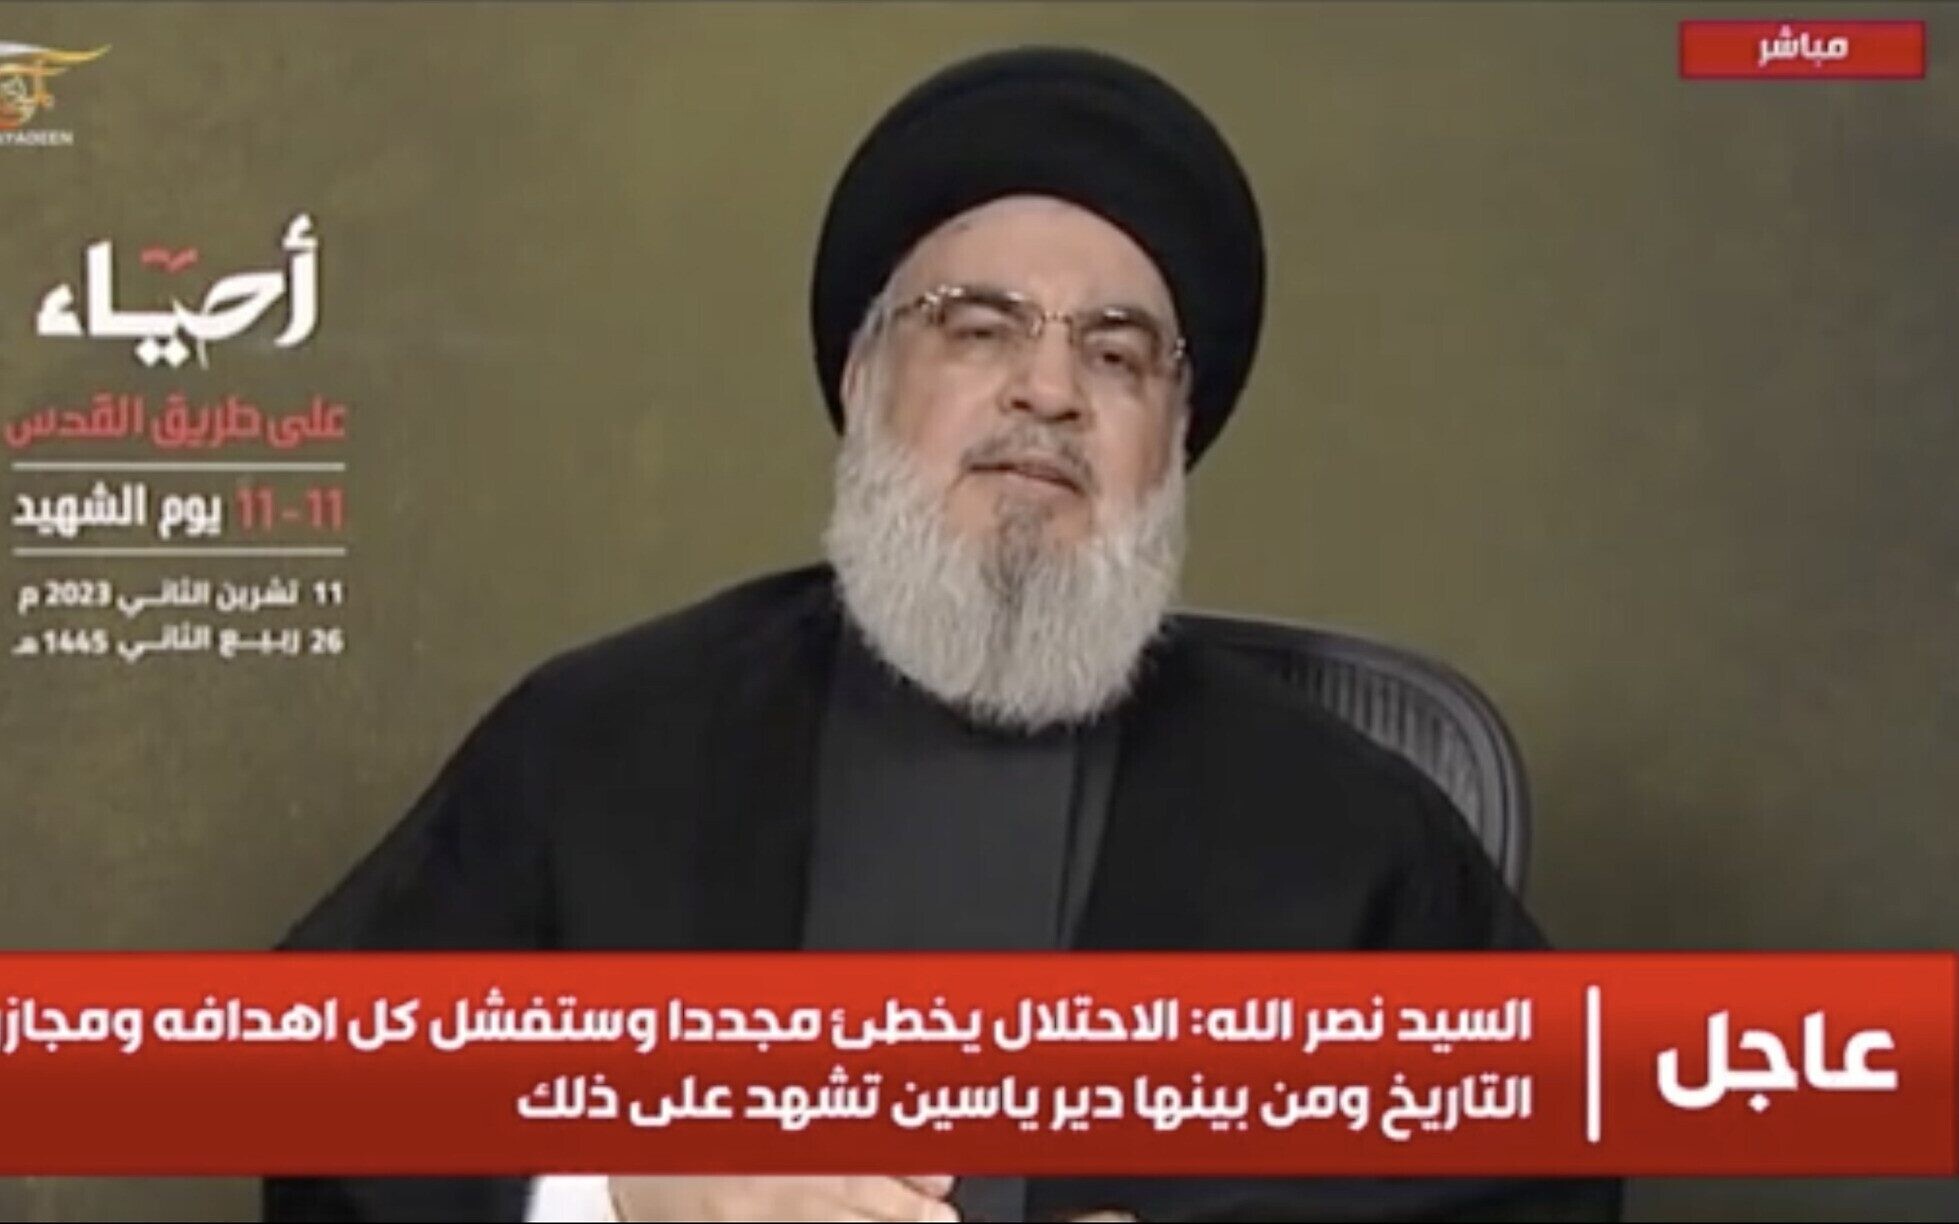 السيد نصر الله: يوم الشهيد هو بمثابة ذكرى سنوية لكل شهيد من شهداء حزب الله